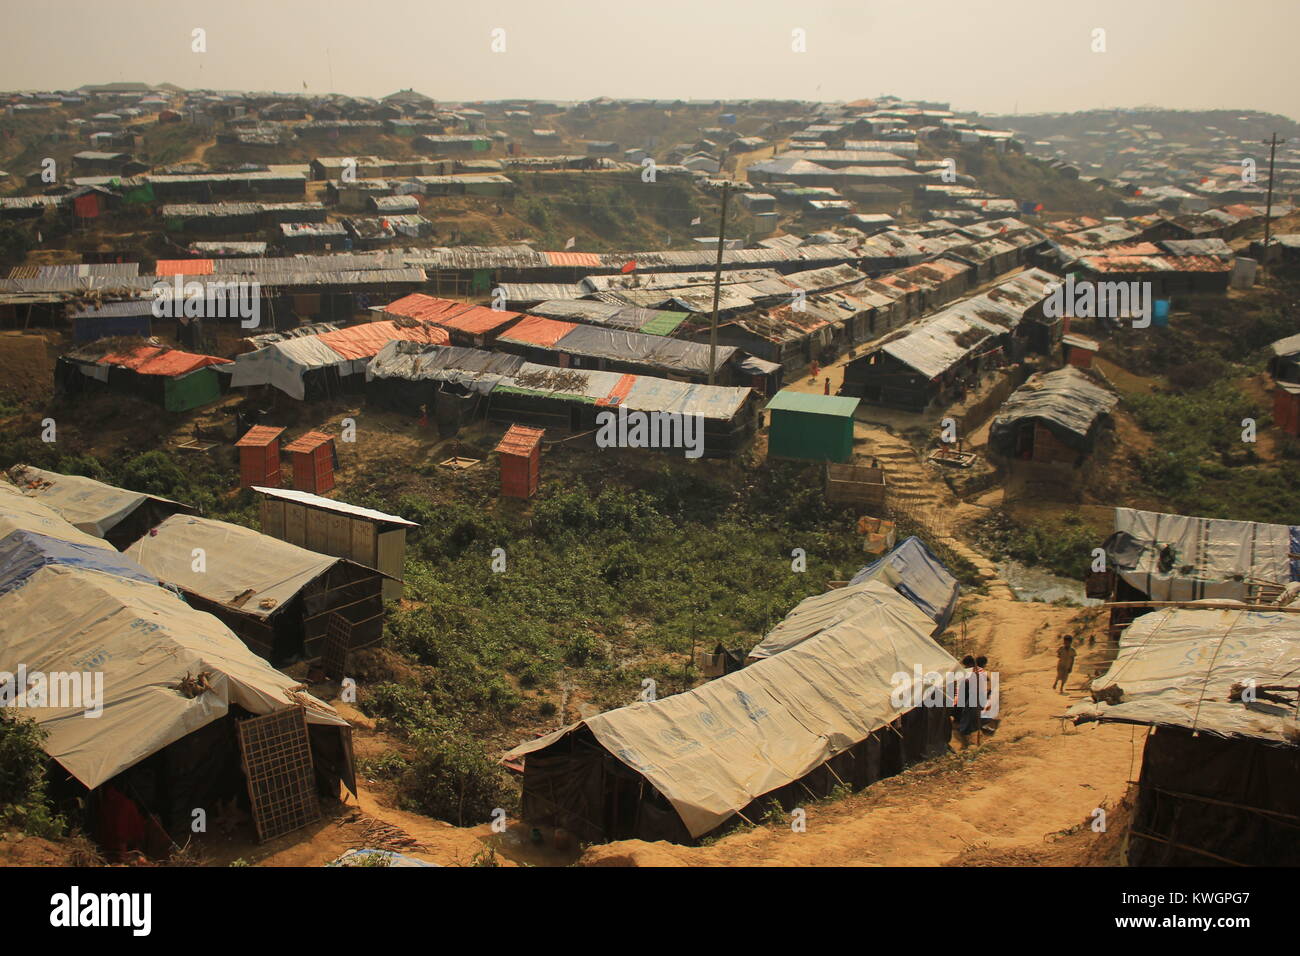 22 novembre 2017 - Cox's Bazar, Bangladesh - Vue générale du camp de réfugiés rohingyas.Plus de 600 000 réfugiés Rohingyas ont fui l'État de Rakhine au Myanmar depuis août 2017, comme la plupart d'entre eux continuer à essayer de traverser la frontière pour atteindre le Bangladesh tous les jours. Credit : Asif Ahmed/SOPA/ZUMA/Alamy Fil Live News Banque D'Images